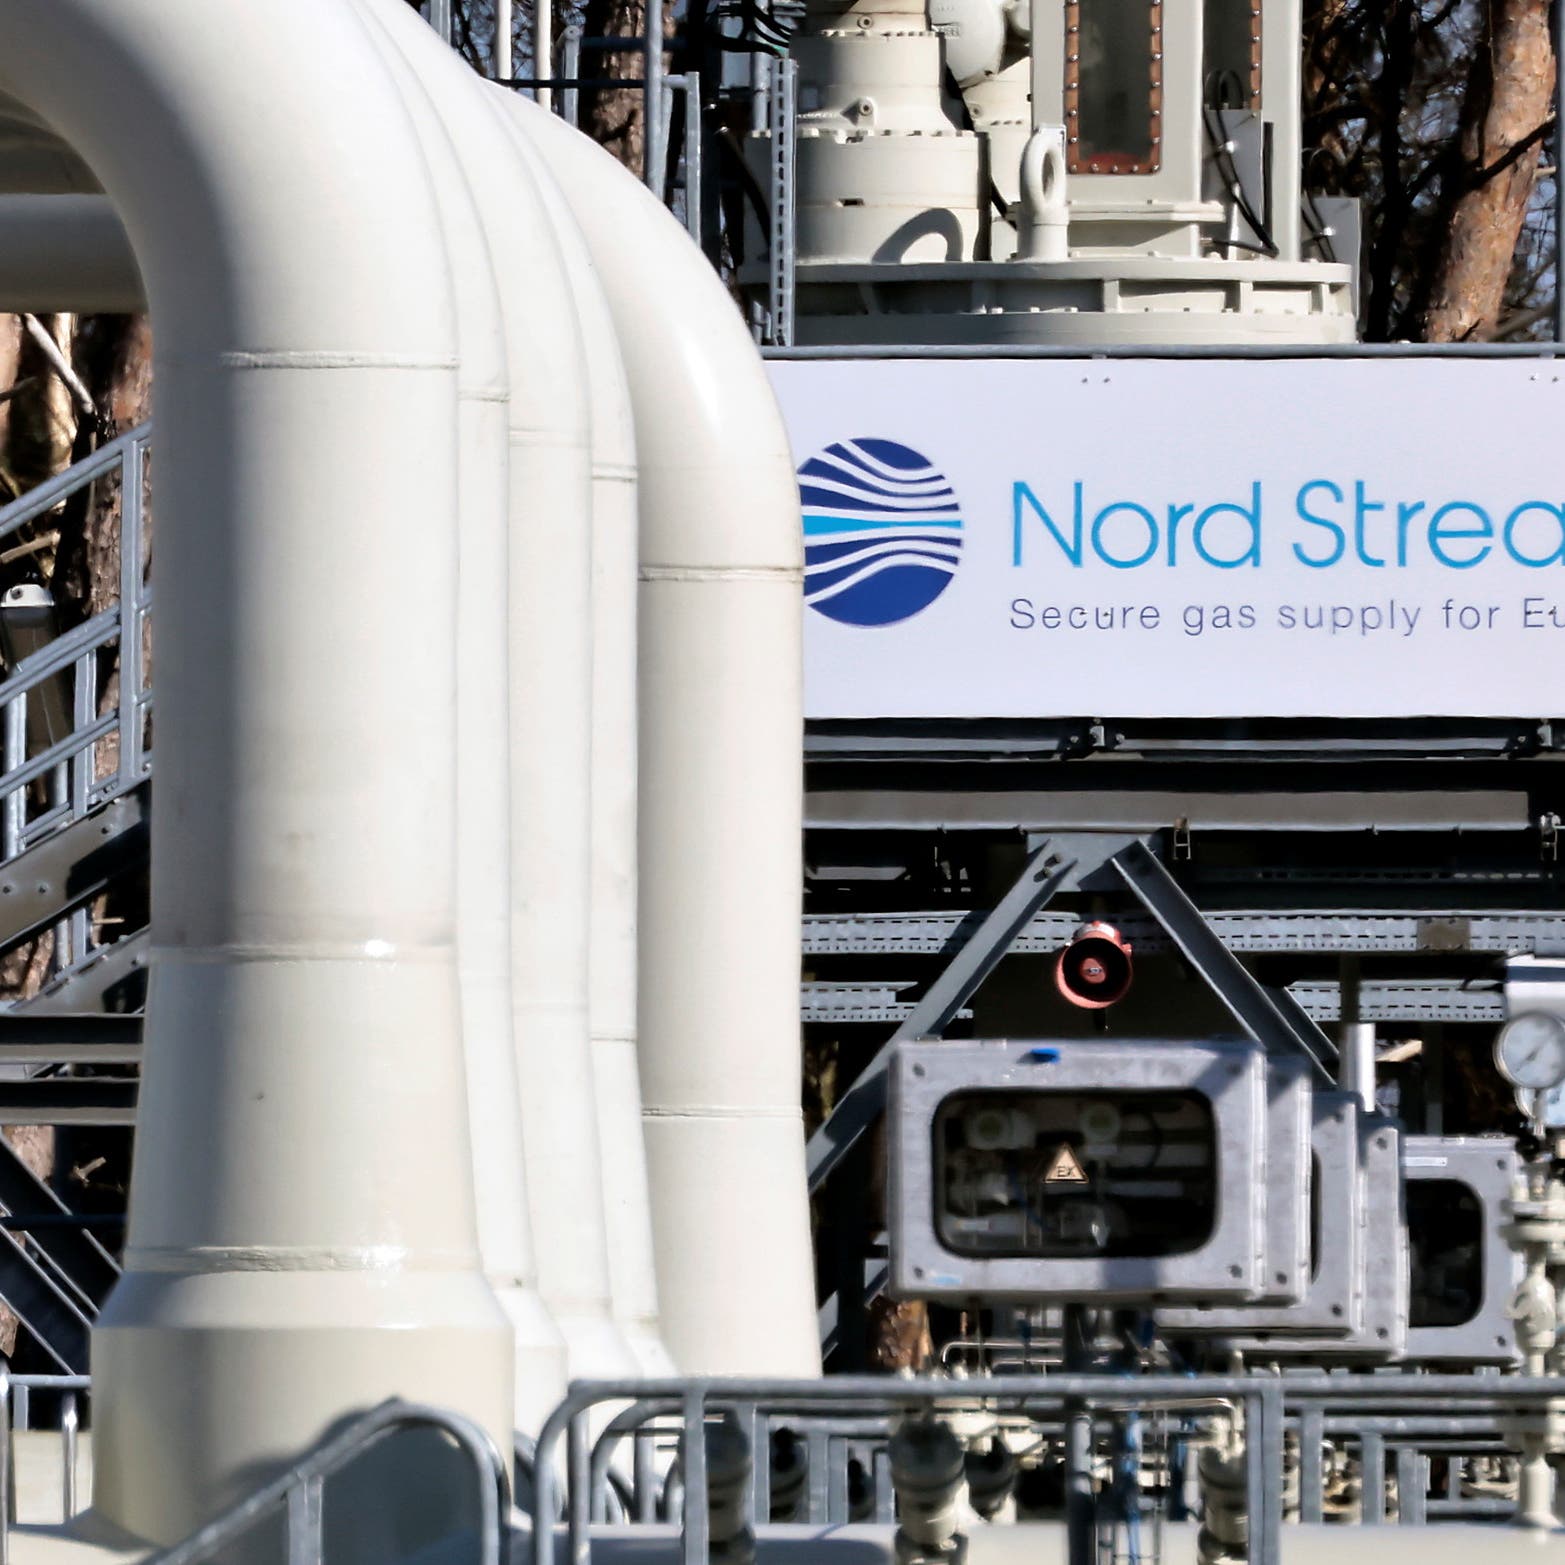 روسيا تعلن عن إيقاف مؤقت لضخ الغاز عبر "نورد ستريم إلى أوروبا